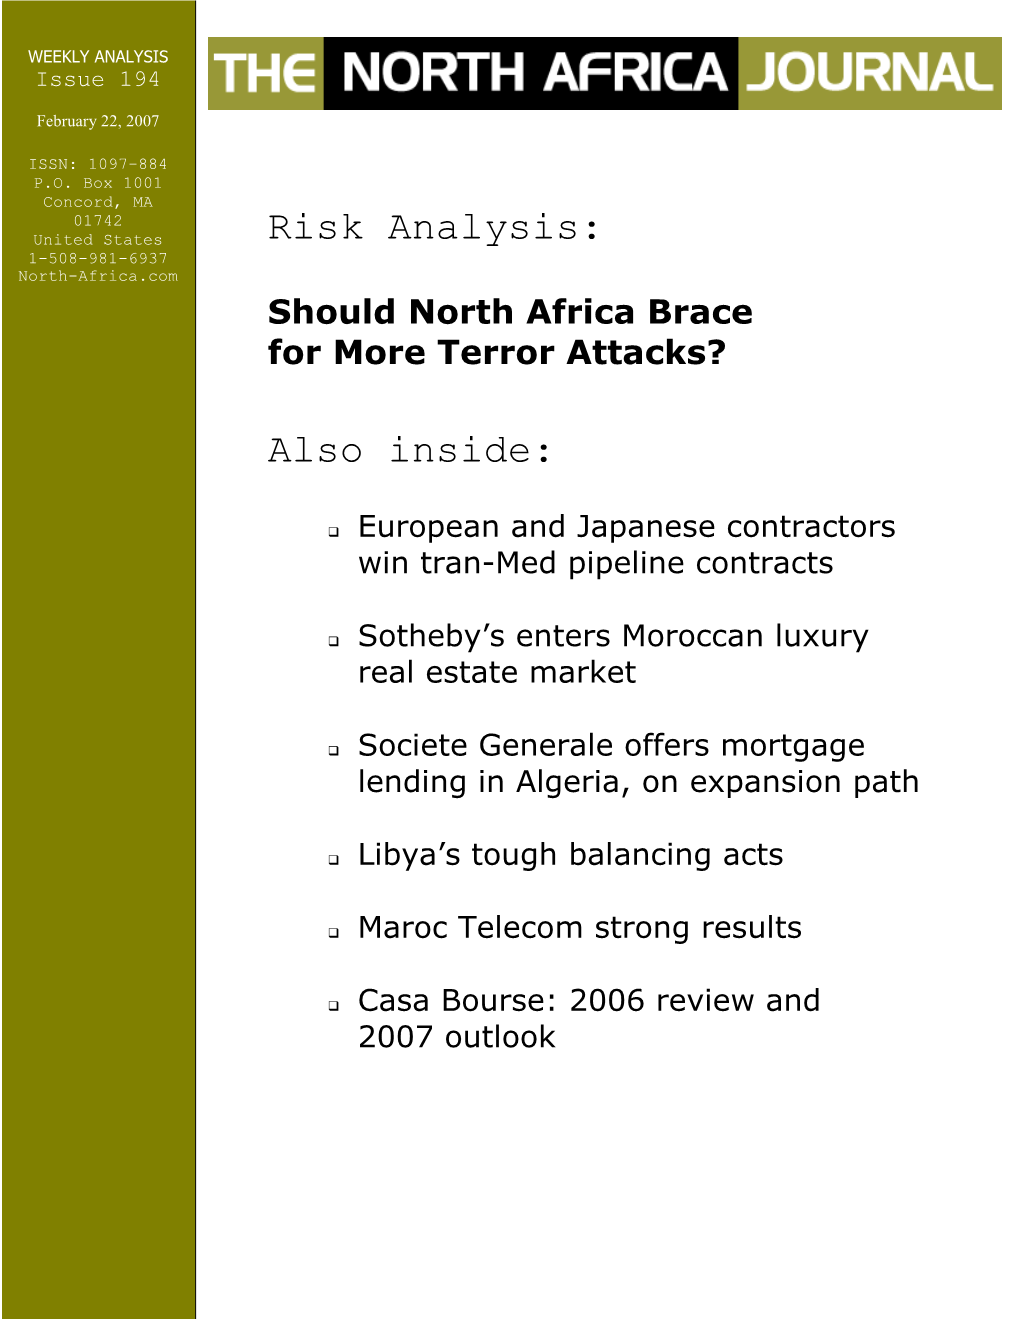 Risk Analysis: Also Inside